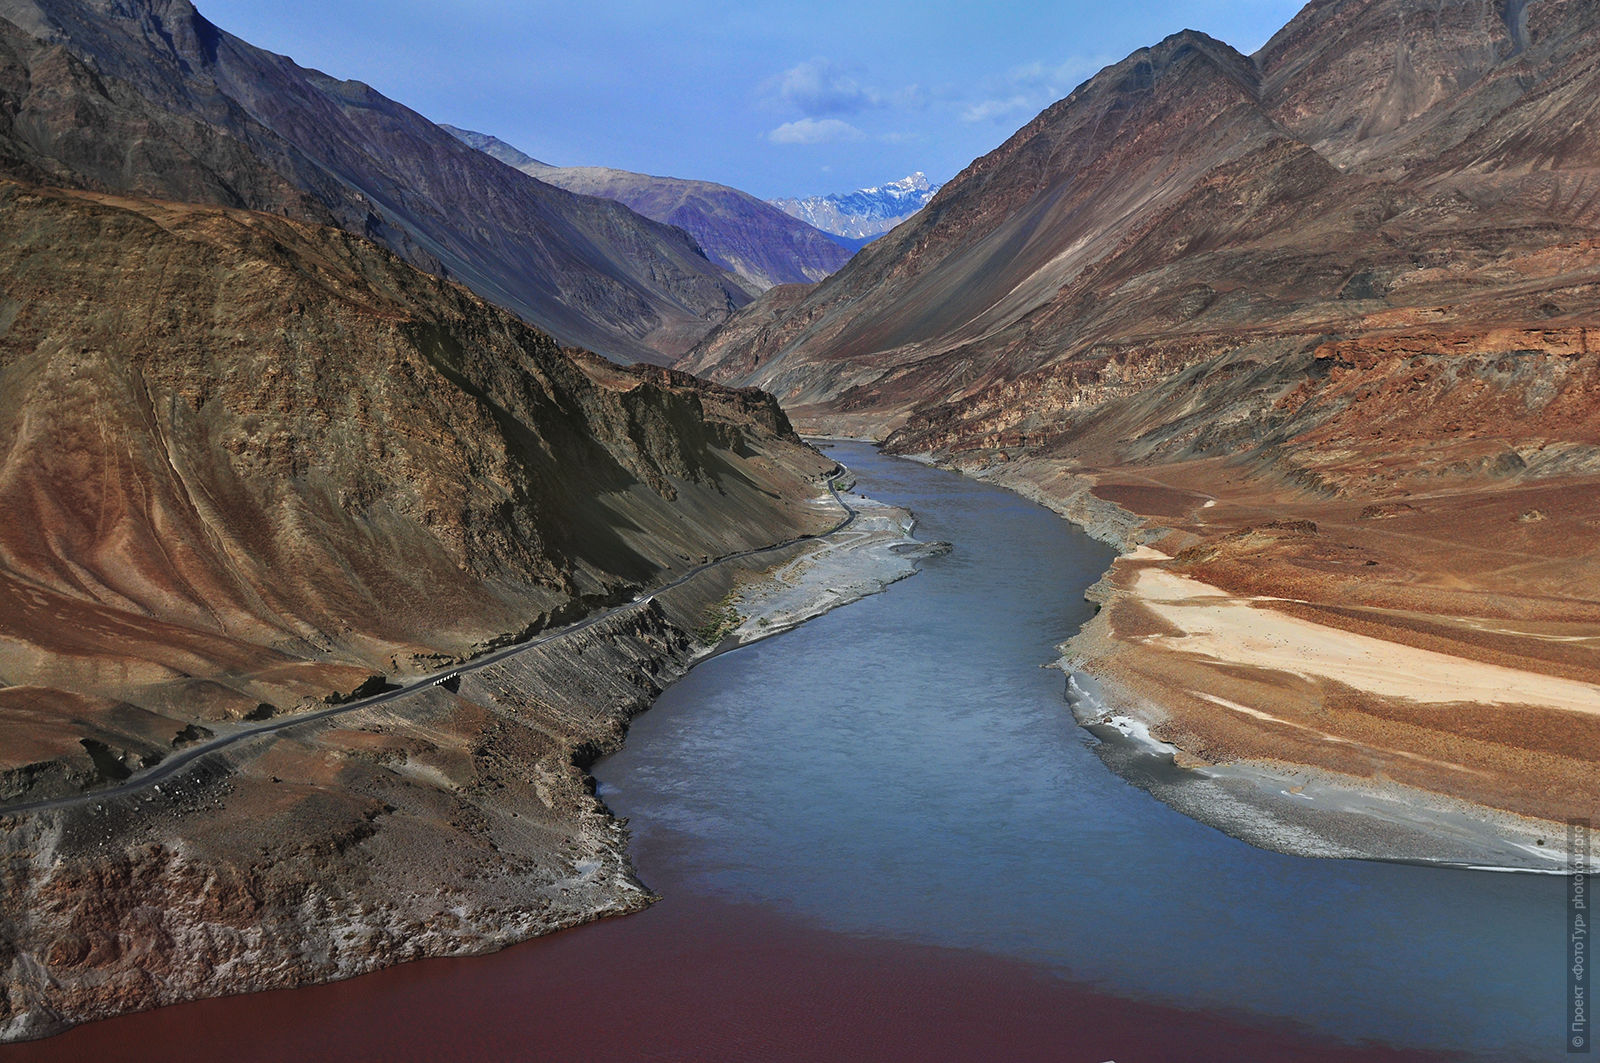 Слияние рек Индус и Занскар, прогулка по долине реки Индус. Туры в долину Спити, Малый Тибет, 2017 год.